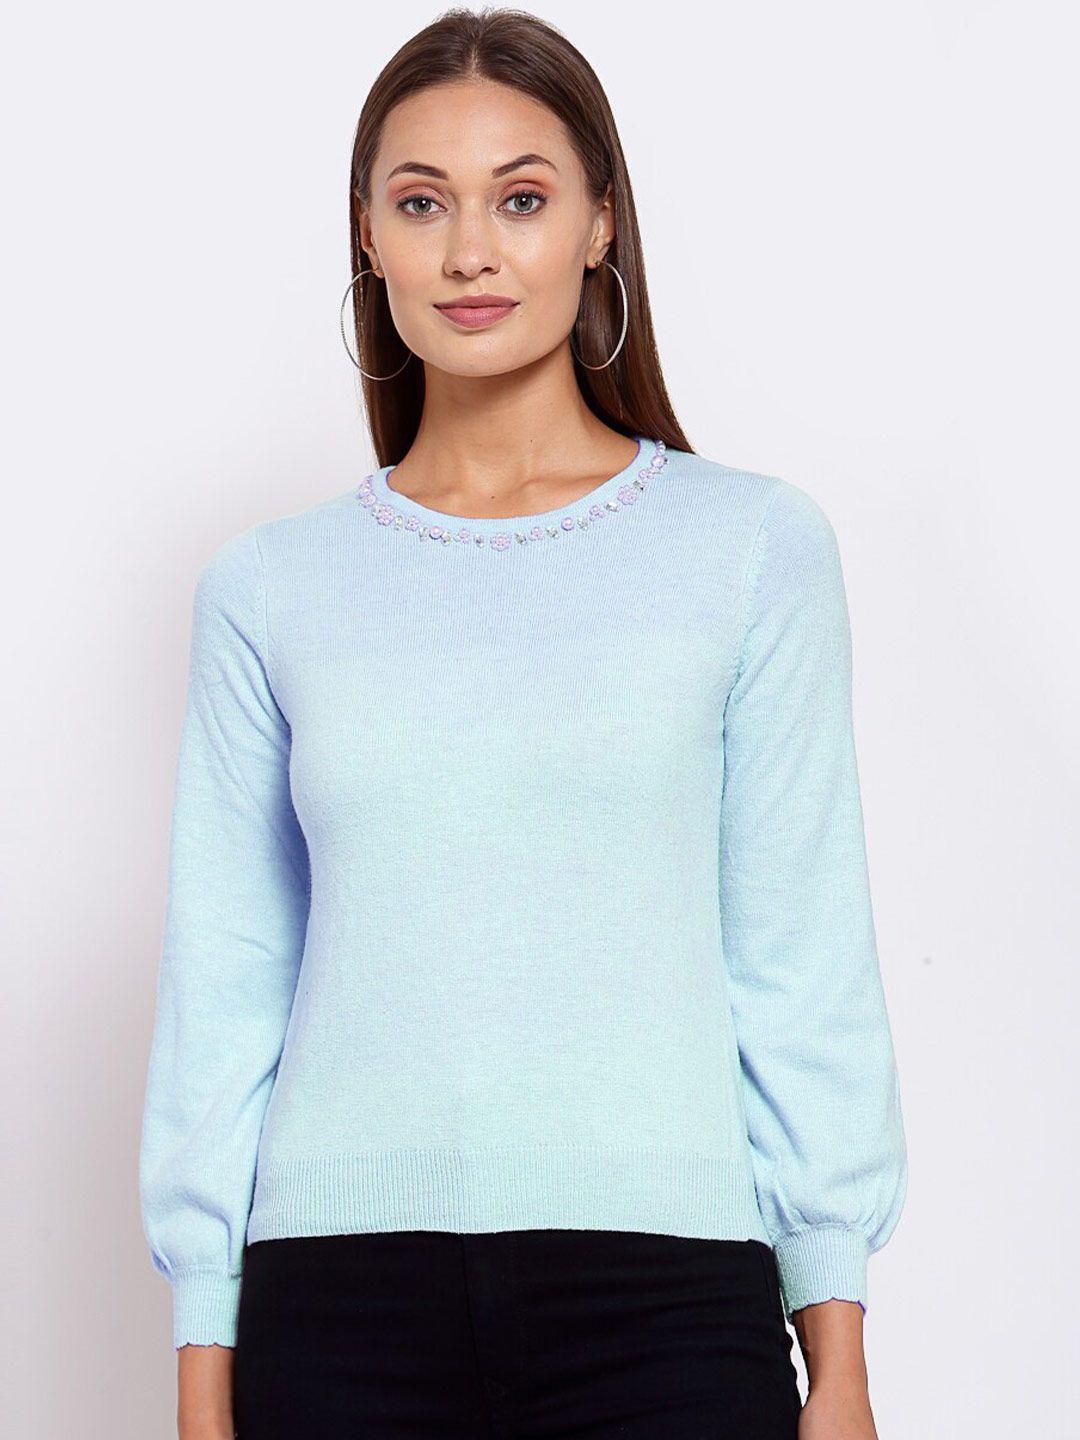 klotthe women blue solid sweater